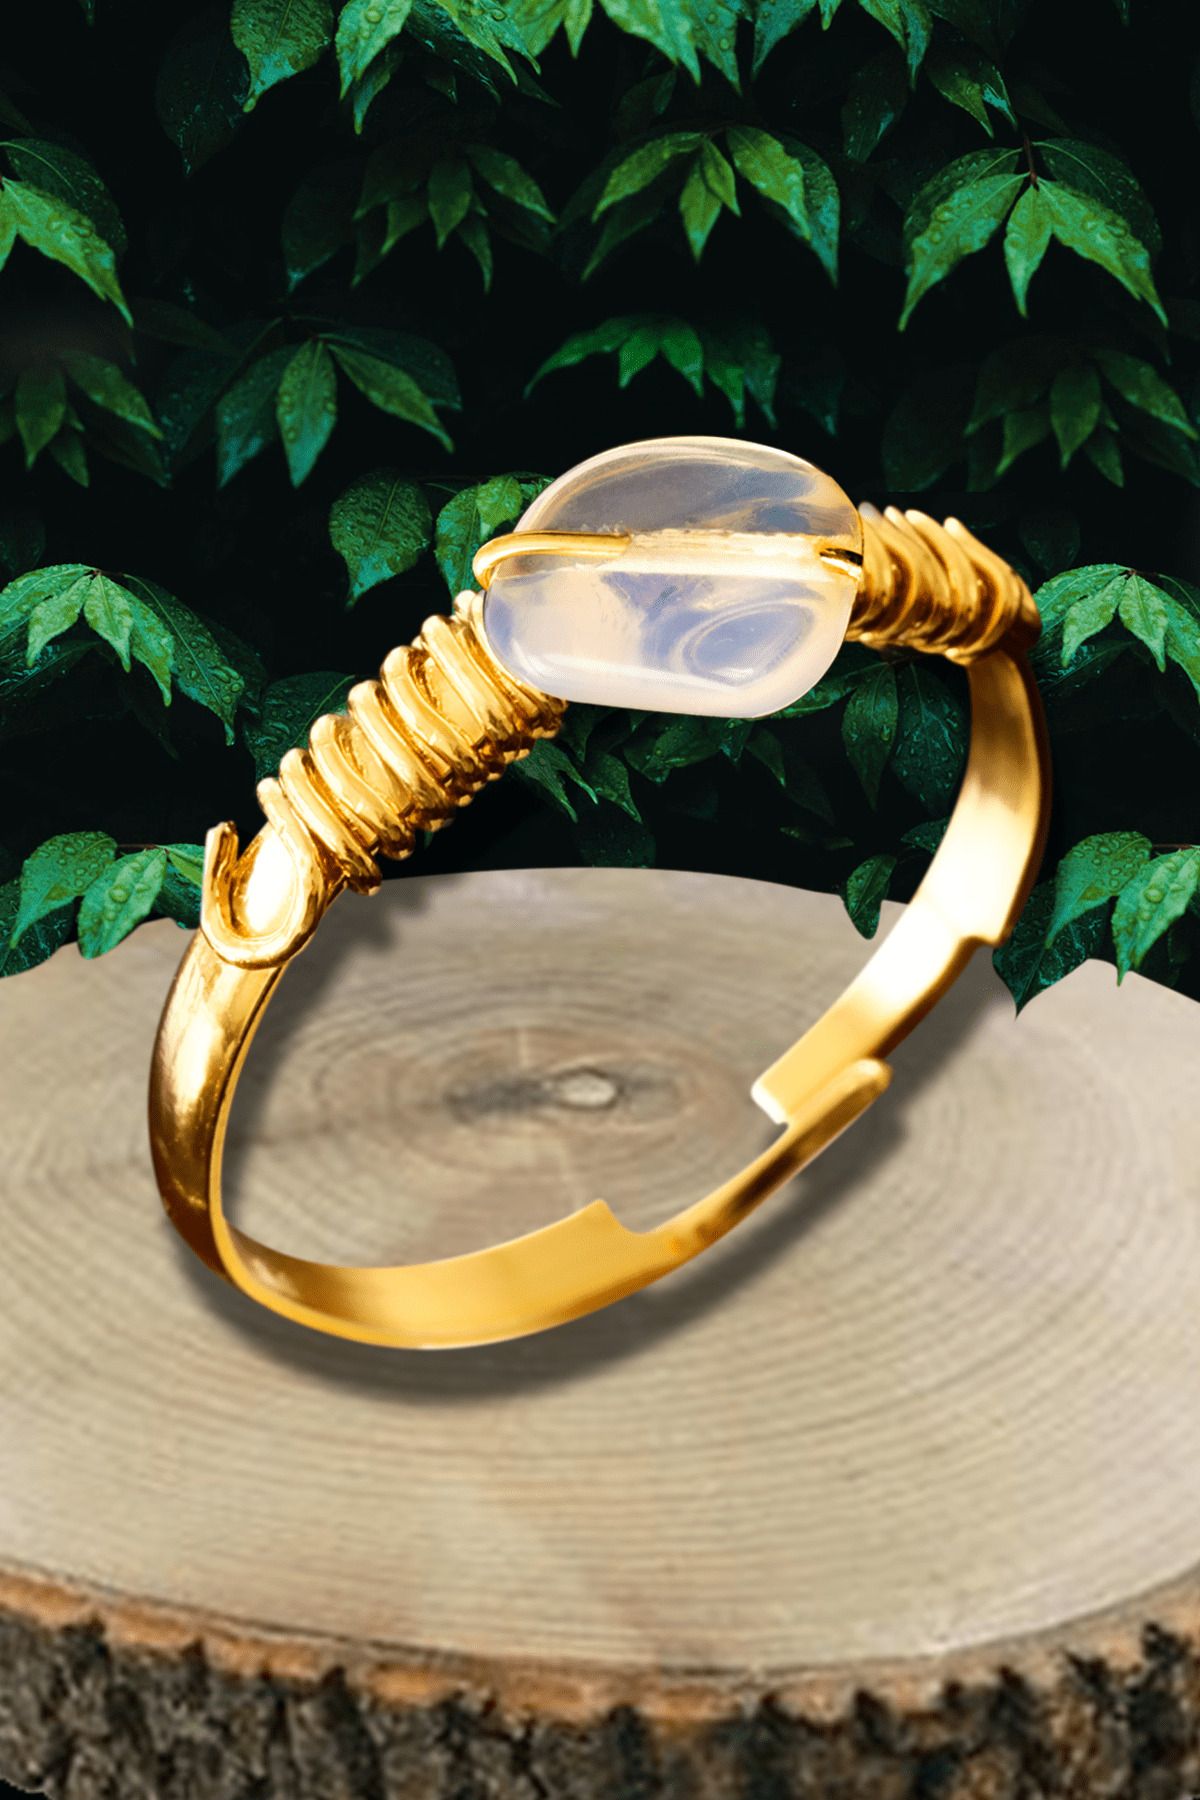 Tesbih Atölyesi Sertifikalı Altın Kaplama Kırık Taşlı Ince Model Opal - Ay Taşı Yüzük